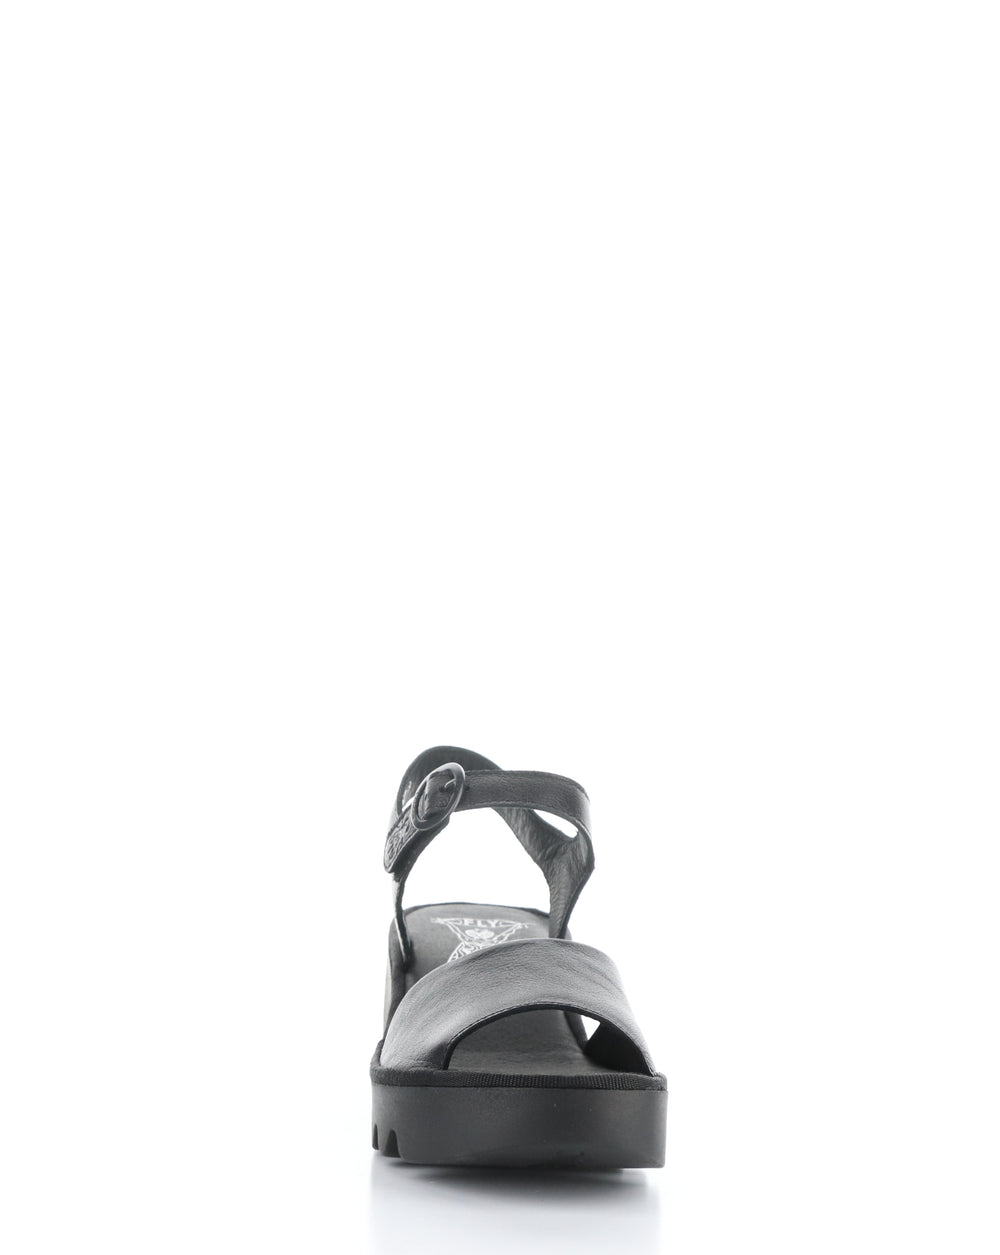 TULL503FLY 000 BLACK Velcro Sandals